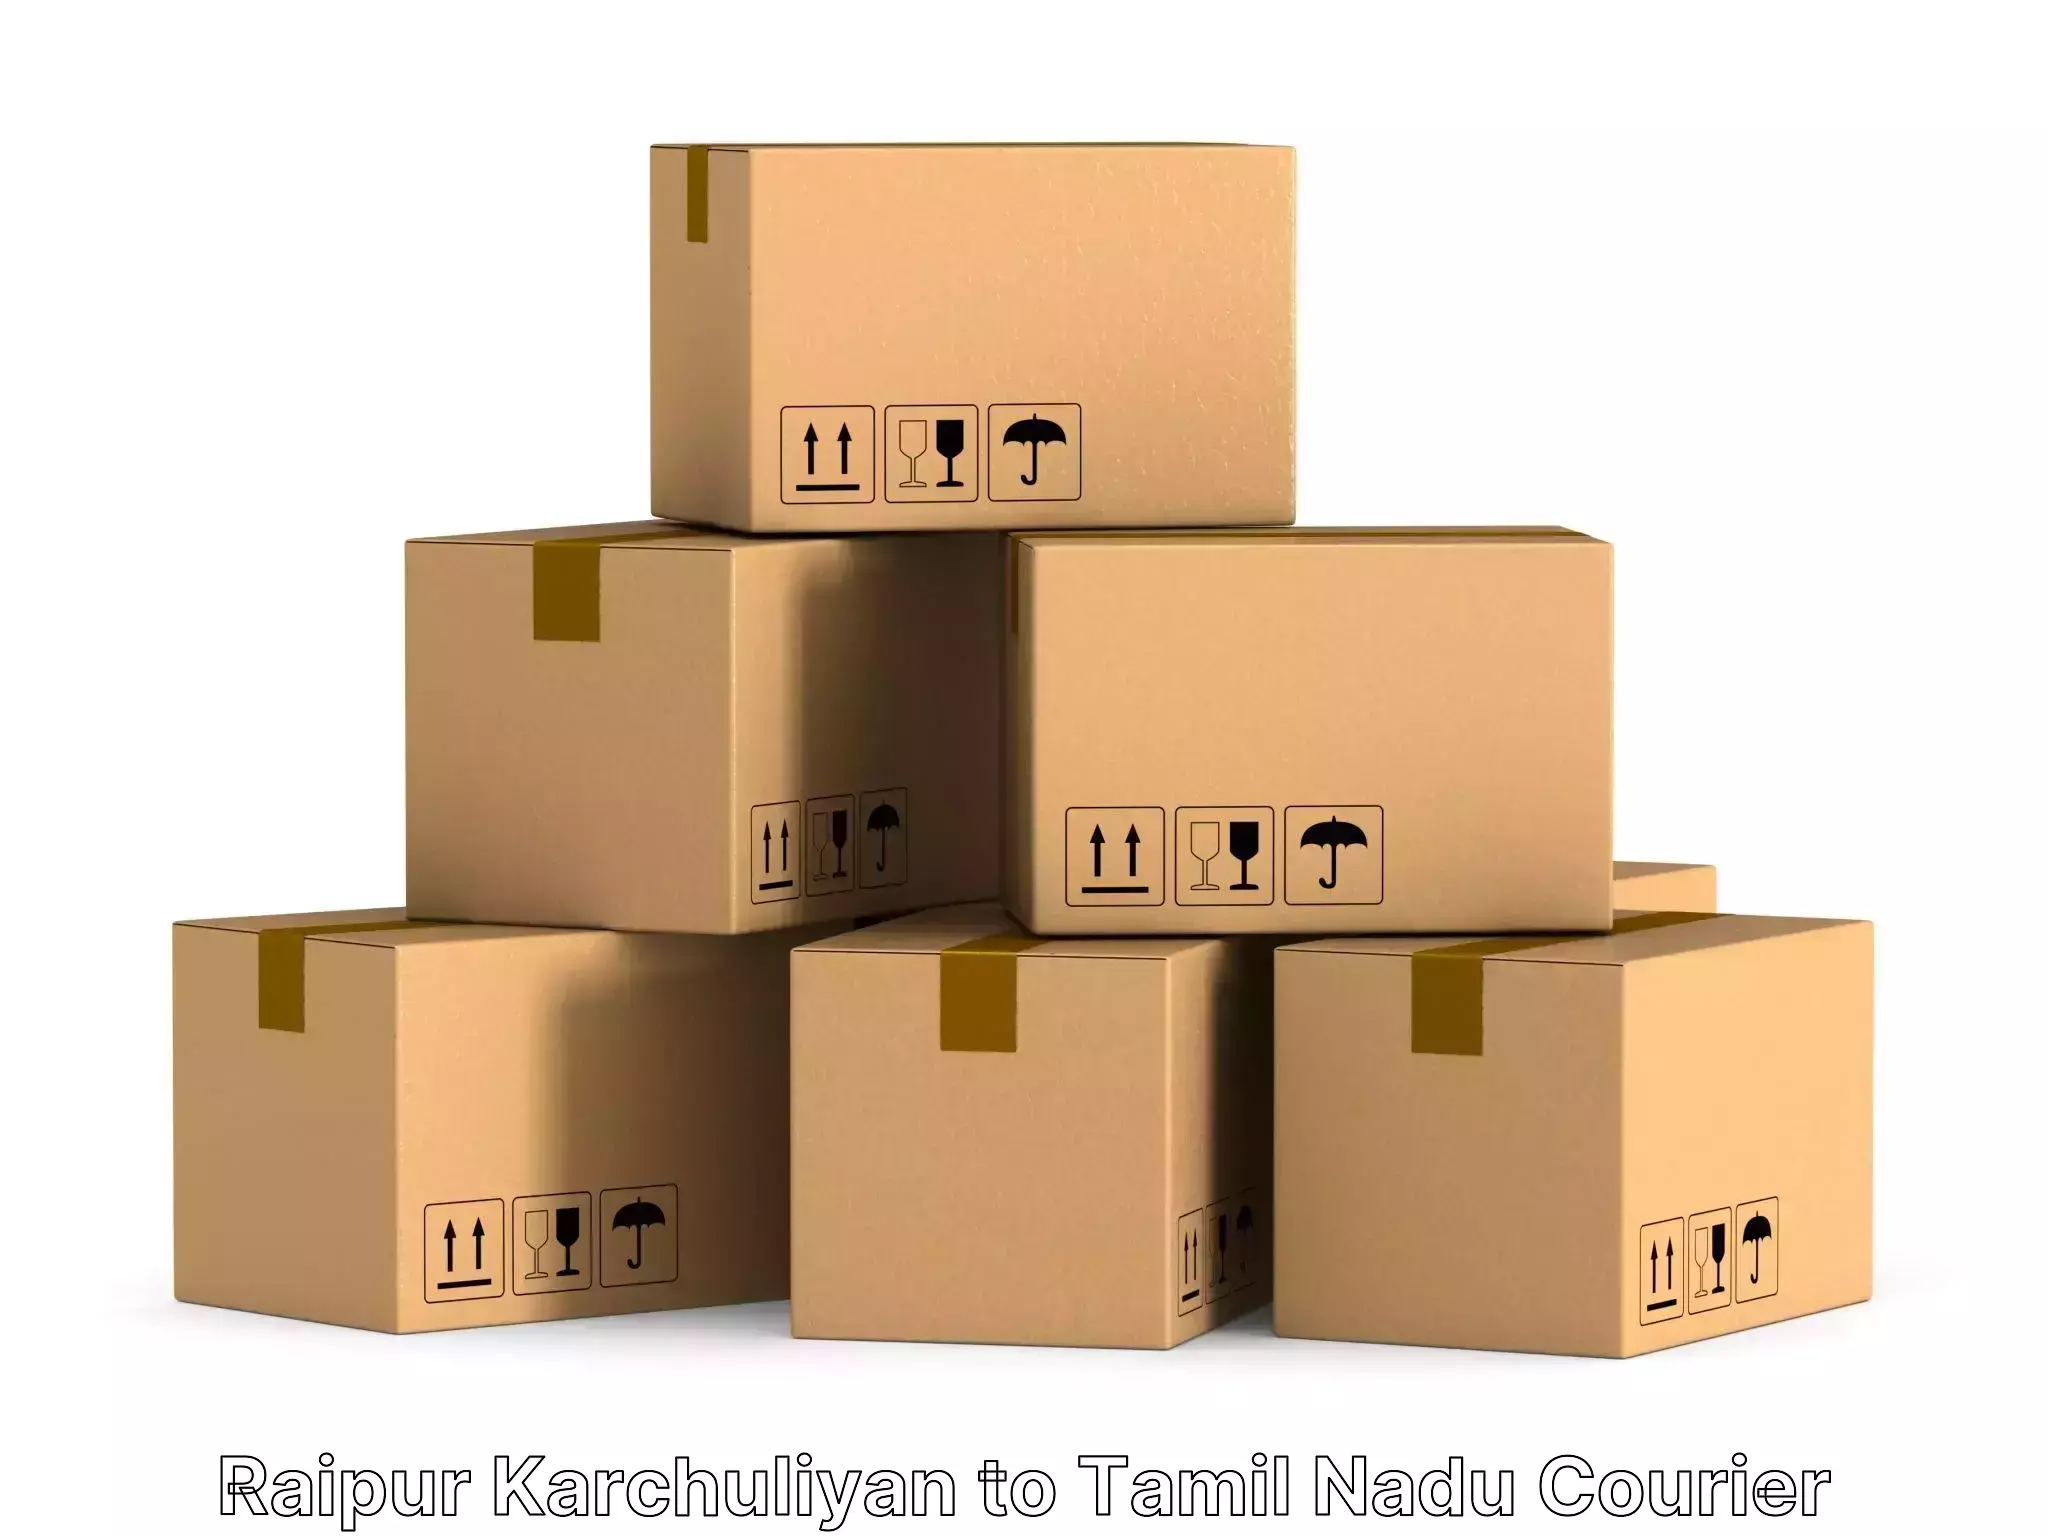 Household moving experts Raipur Karchuliyan to Coonoor